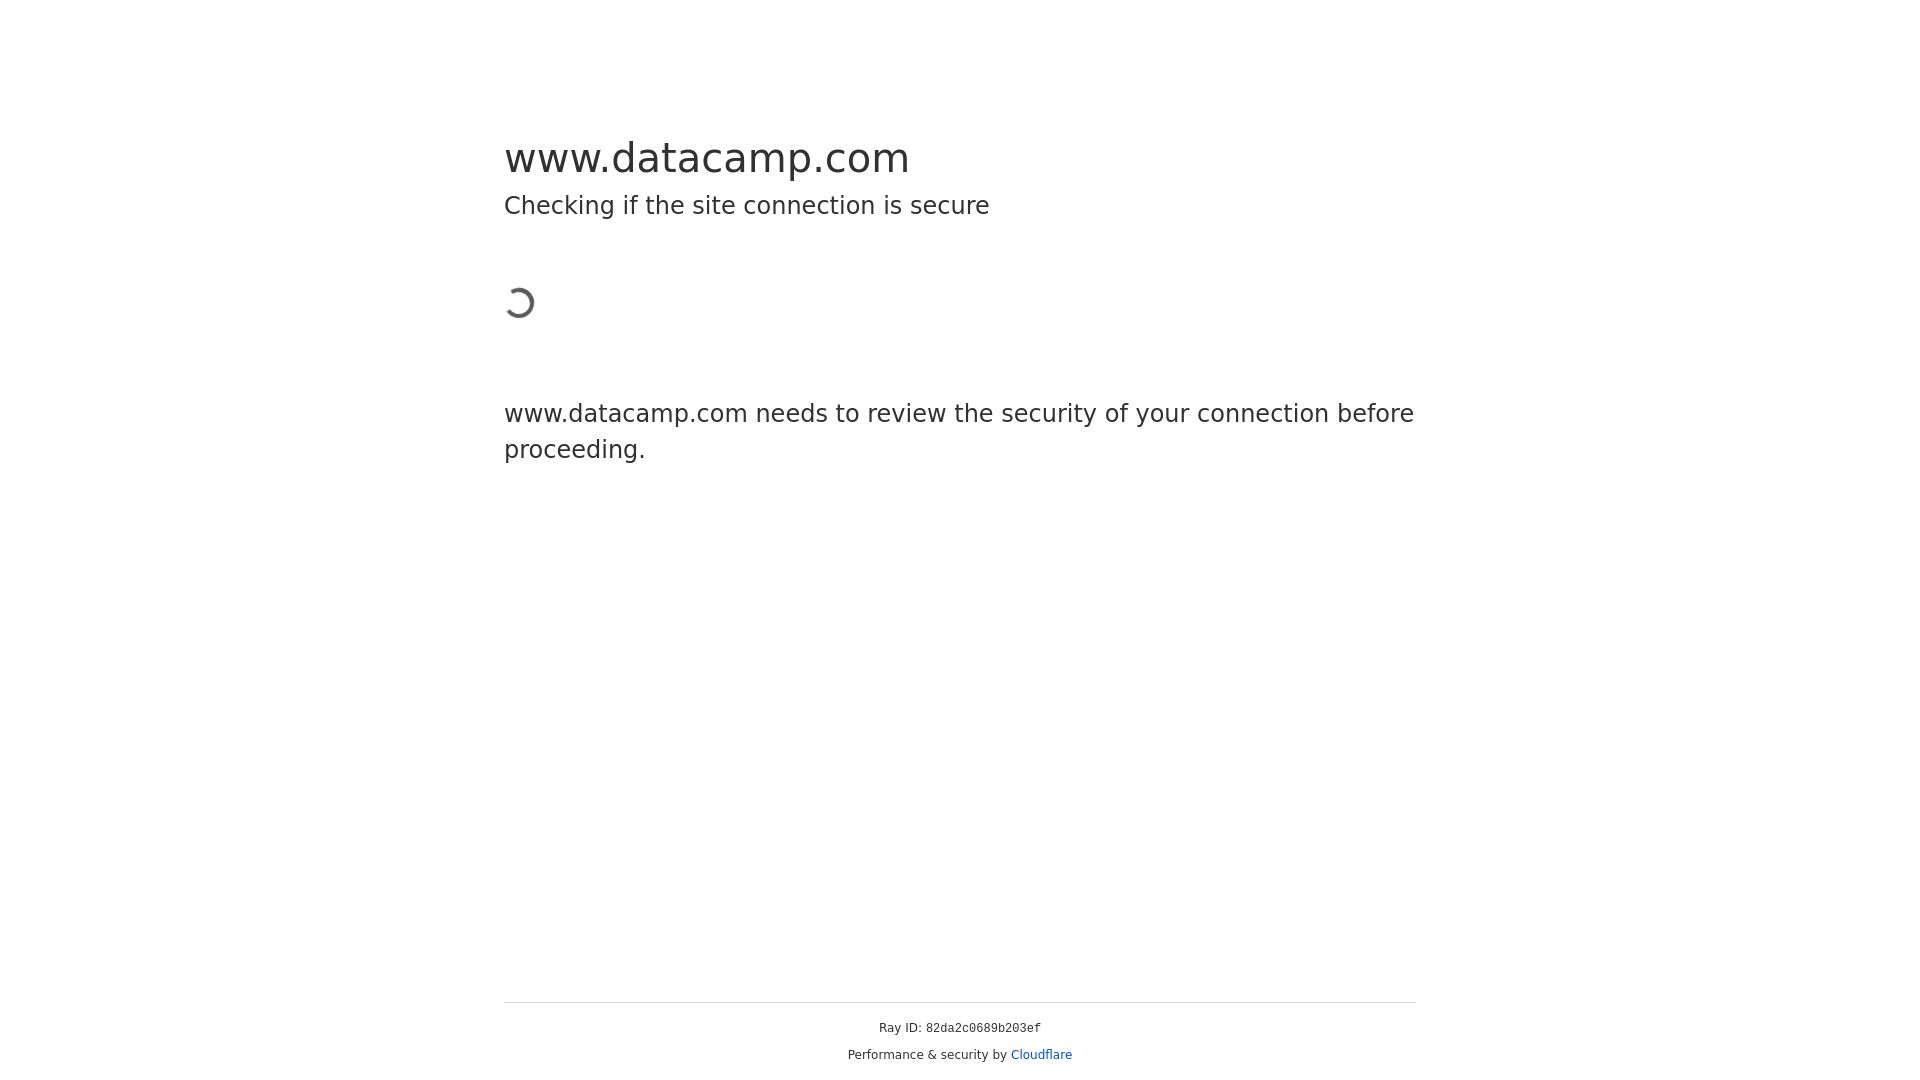 Status do site datacamp.com está   ONLINE